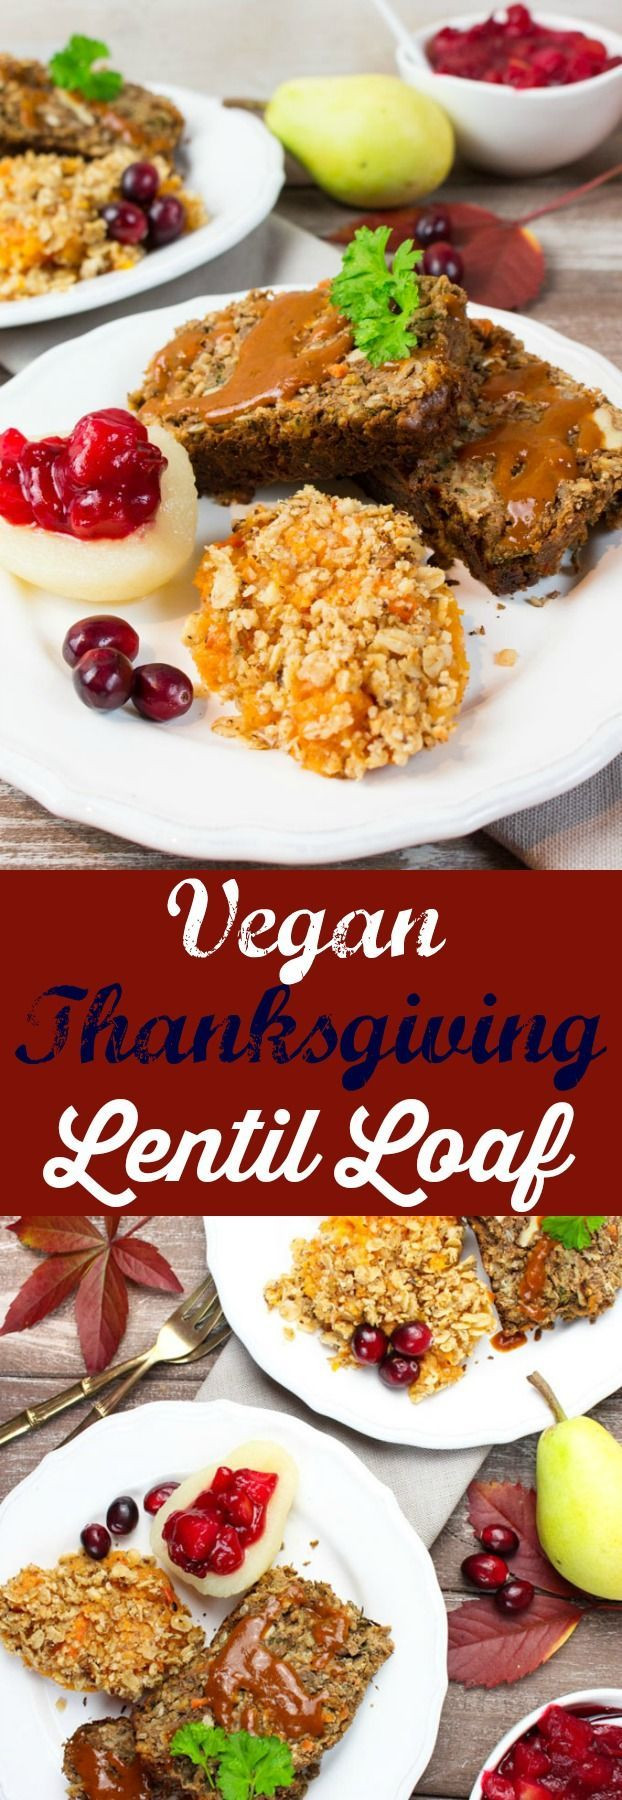 Vegetarian Thanksgiving Loaf
 Vegan Thanksgiving Lentil Loaf Recipe